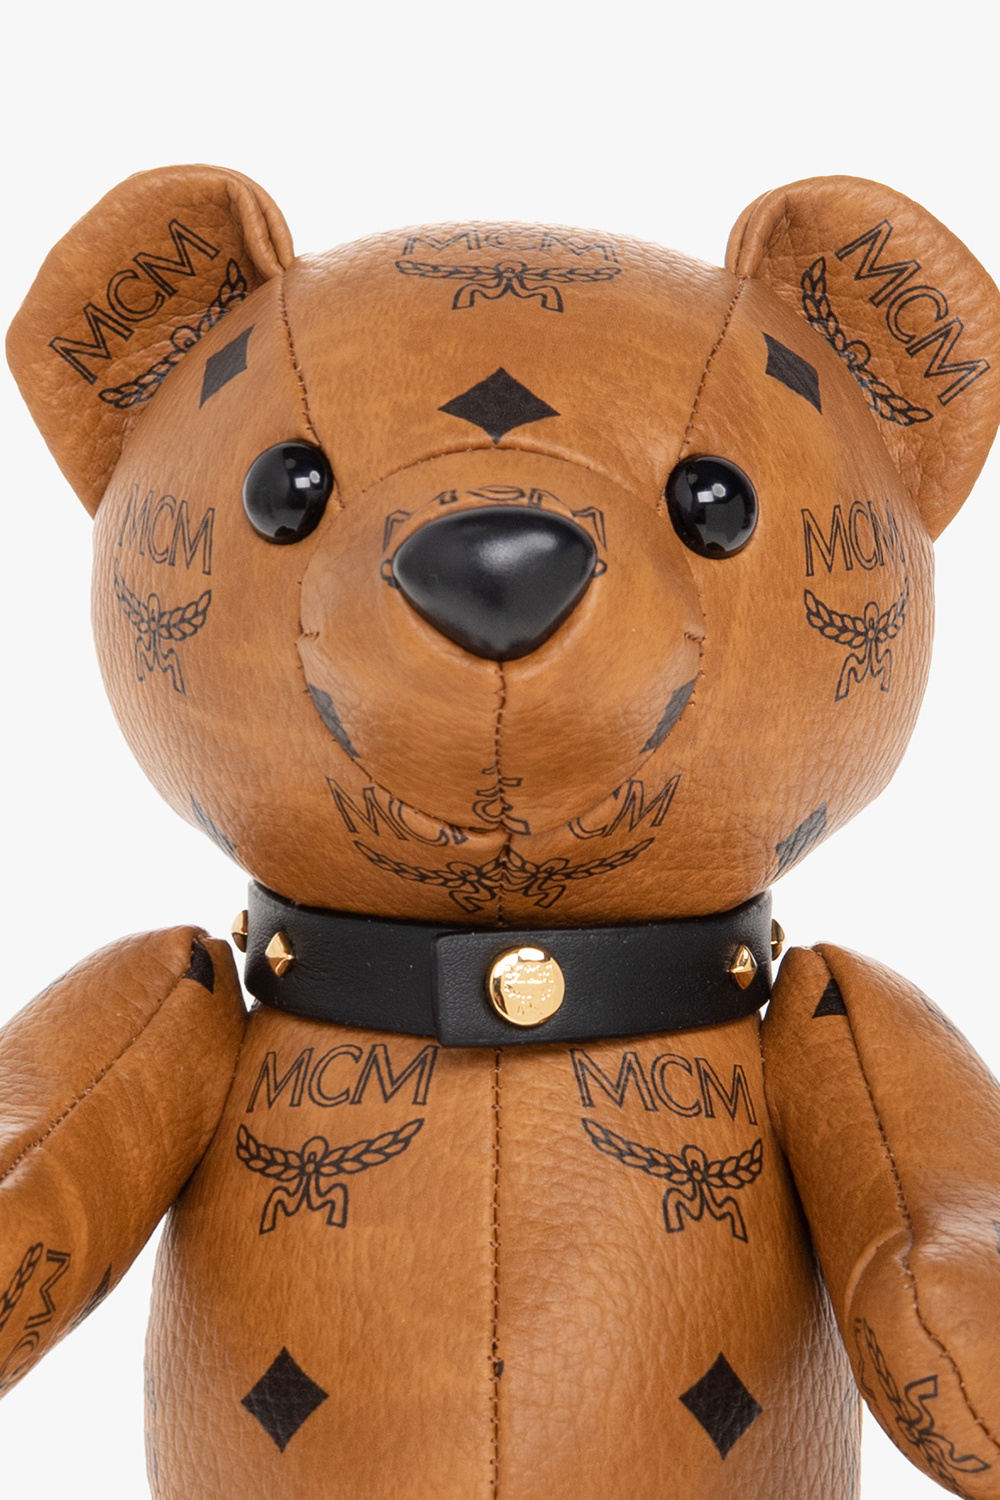 MCM Teddy bear doll